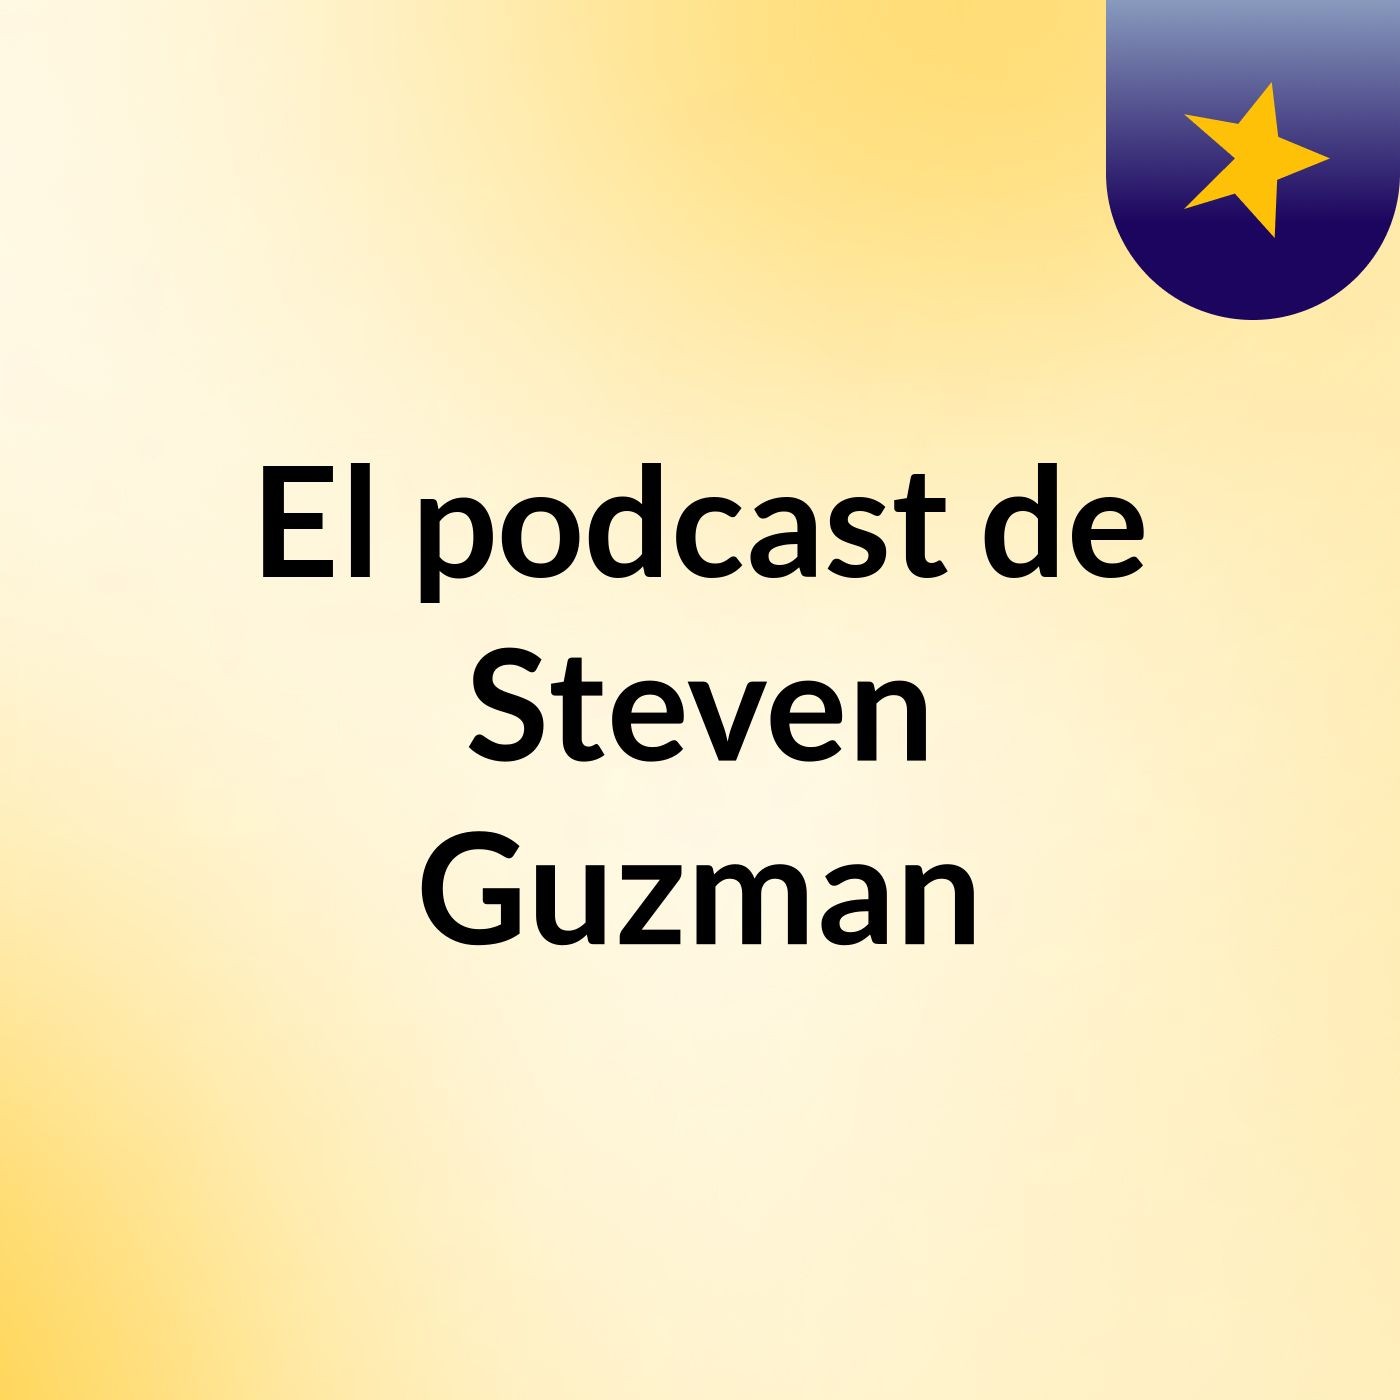 El podcast de Steven Guzman